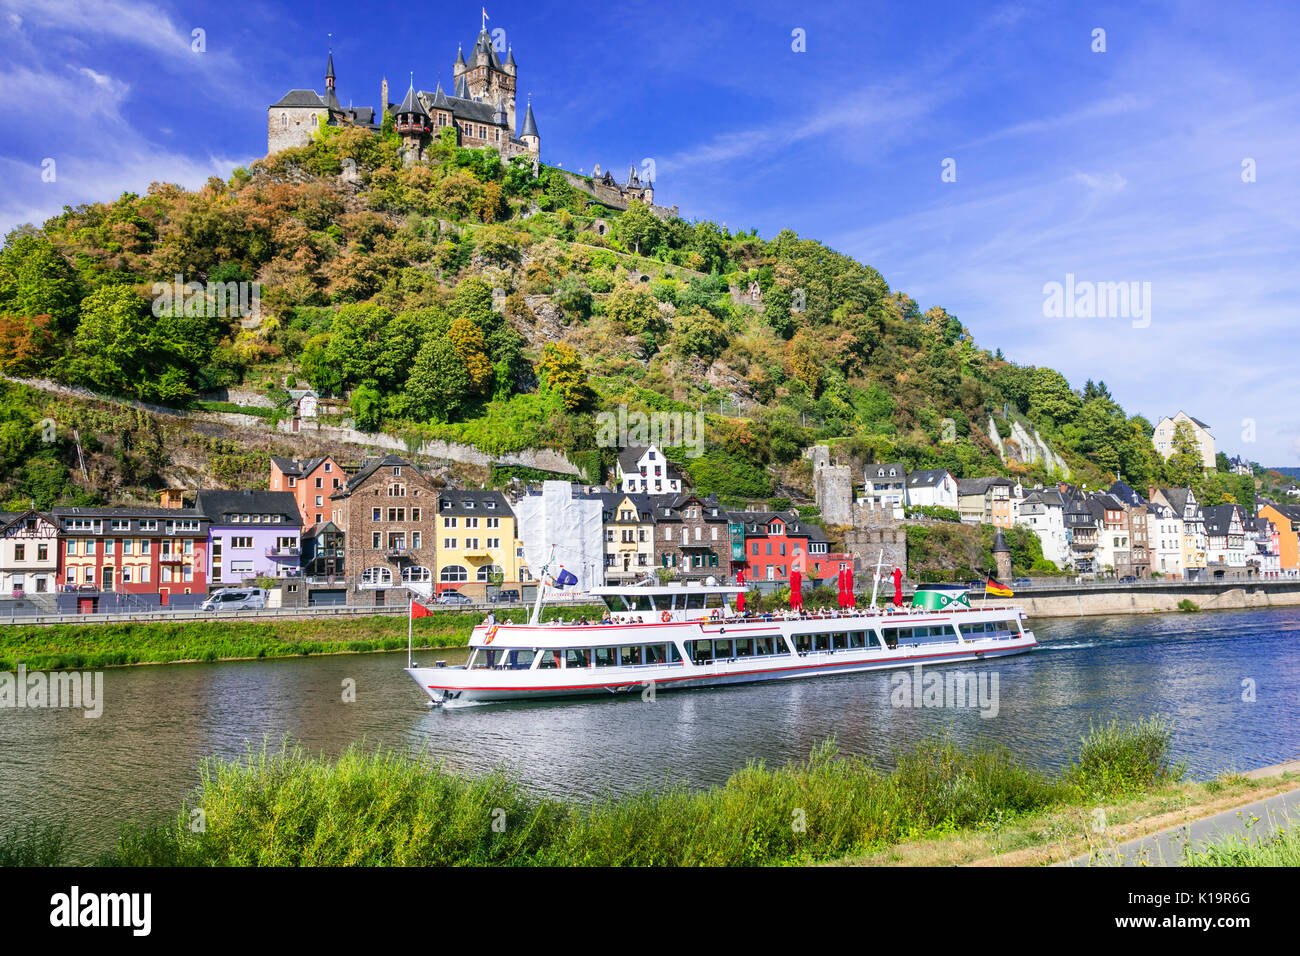 Viaggi in Germania, pittoresco medievale città di Cochem, crociere oltre il fiume Reno Foto Stock